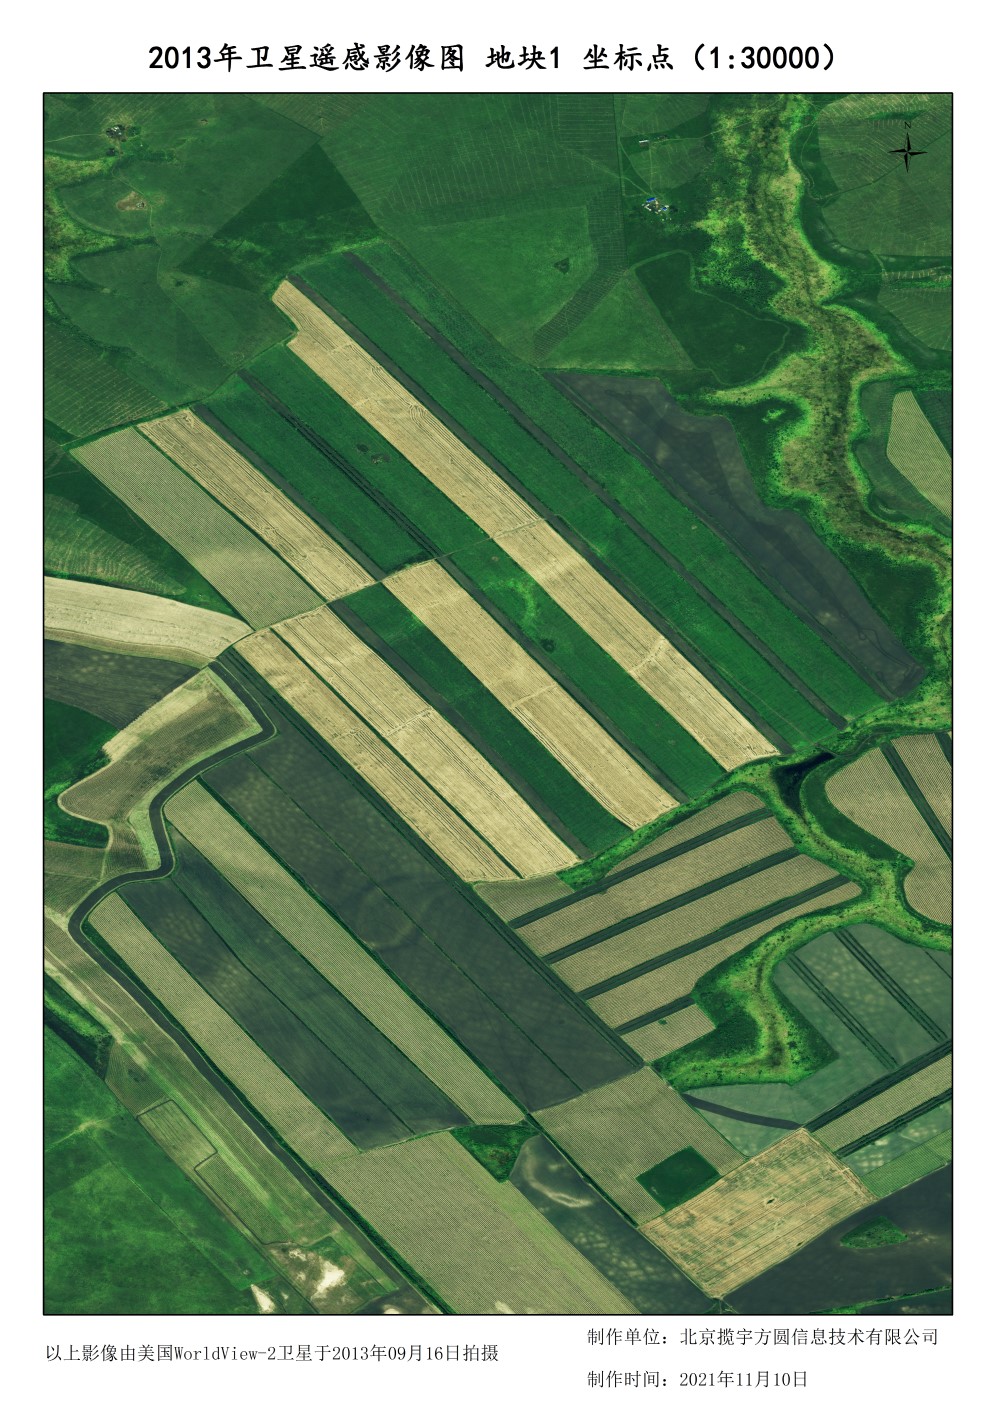 0.5米美国WORLDVIEW2卫星农牧场影像数据样例